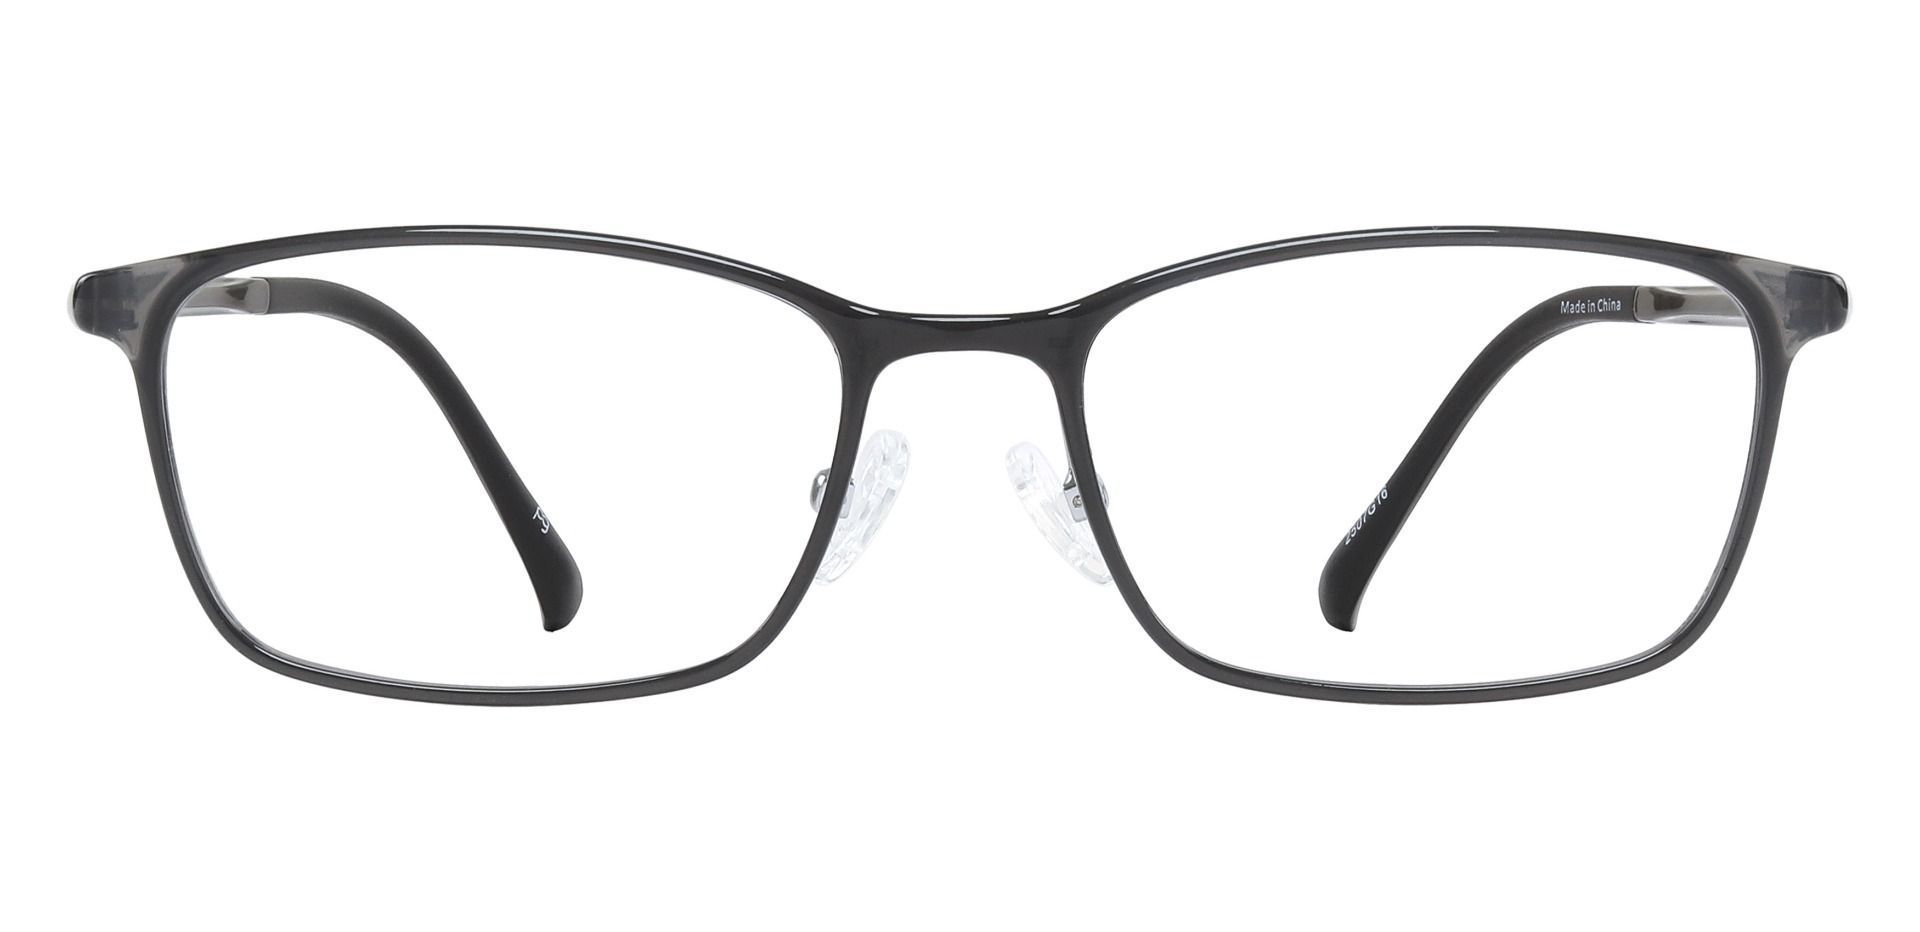 Wilcox Rectangle Eyeglasses Frame - Brown | Women's Eyeglasses | Payne ...